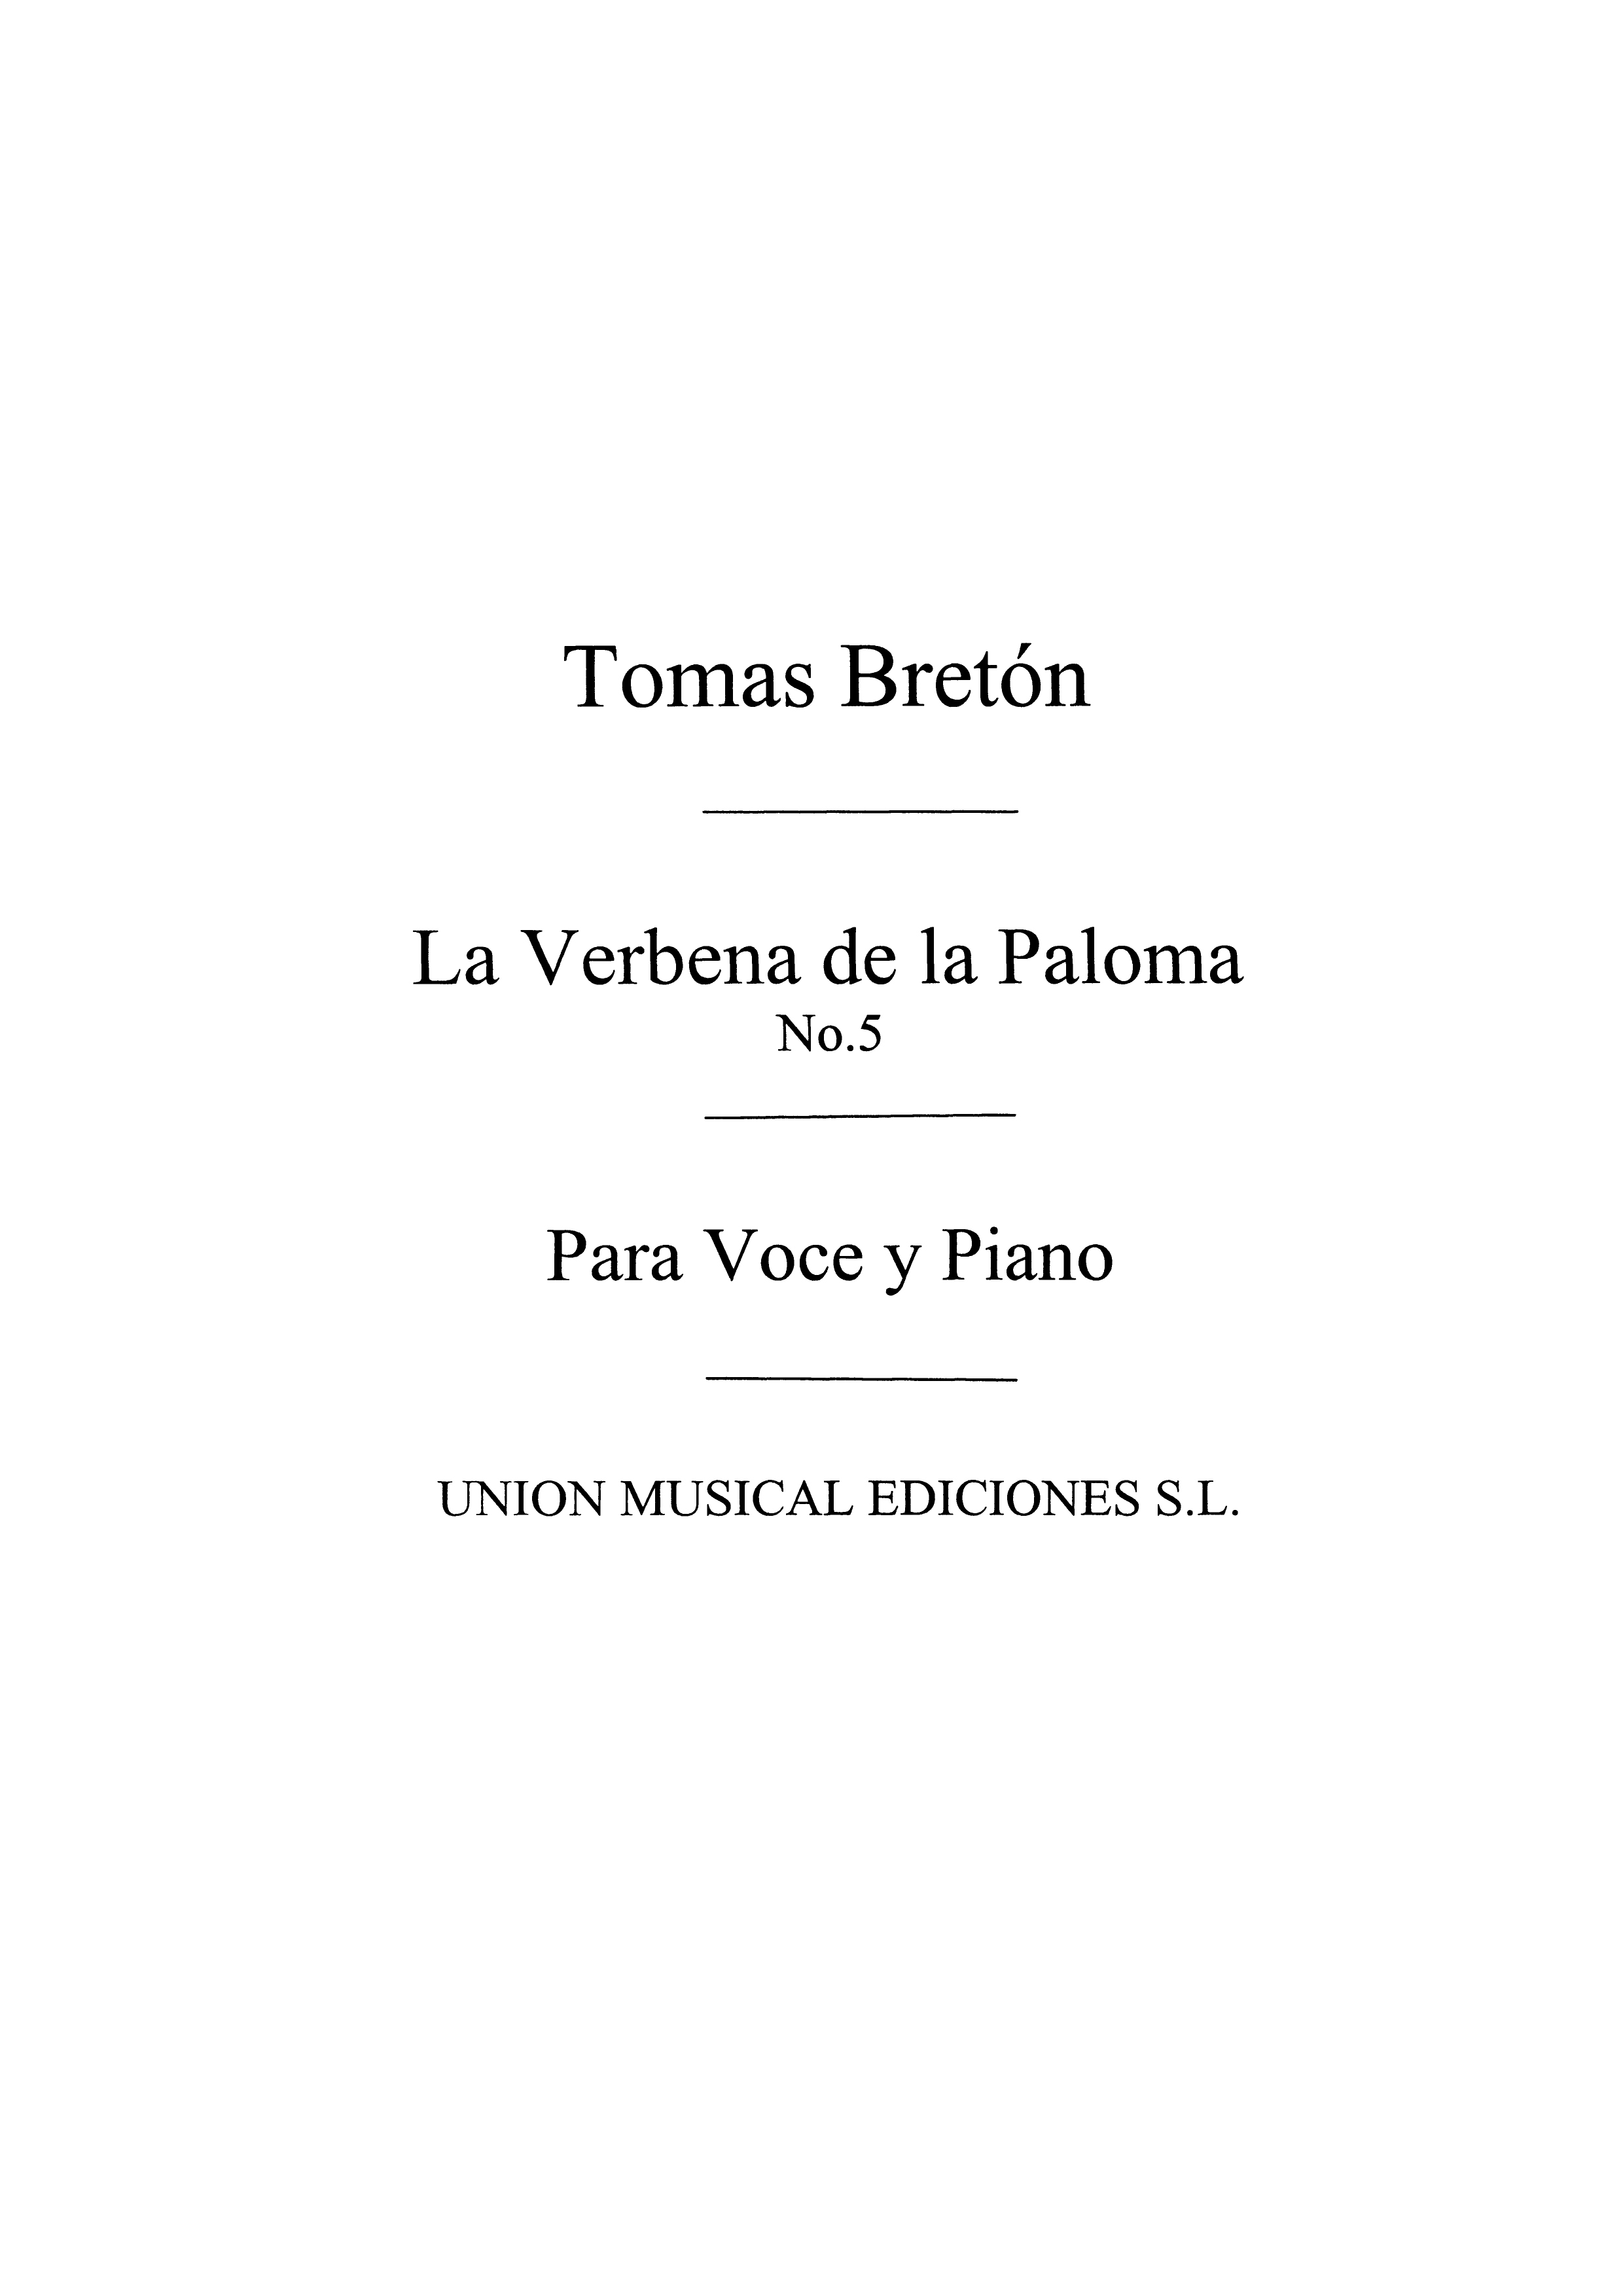 Tomas Breton: La Verbena De La Paloma No.5